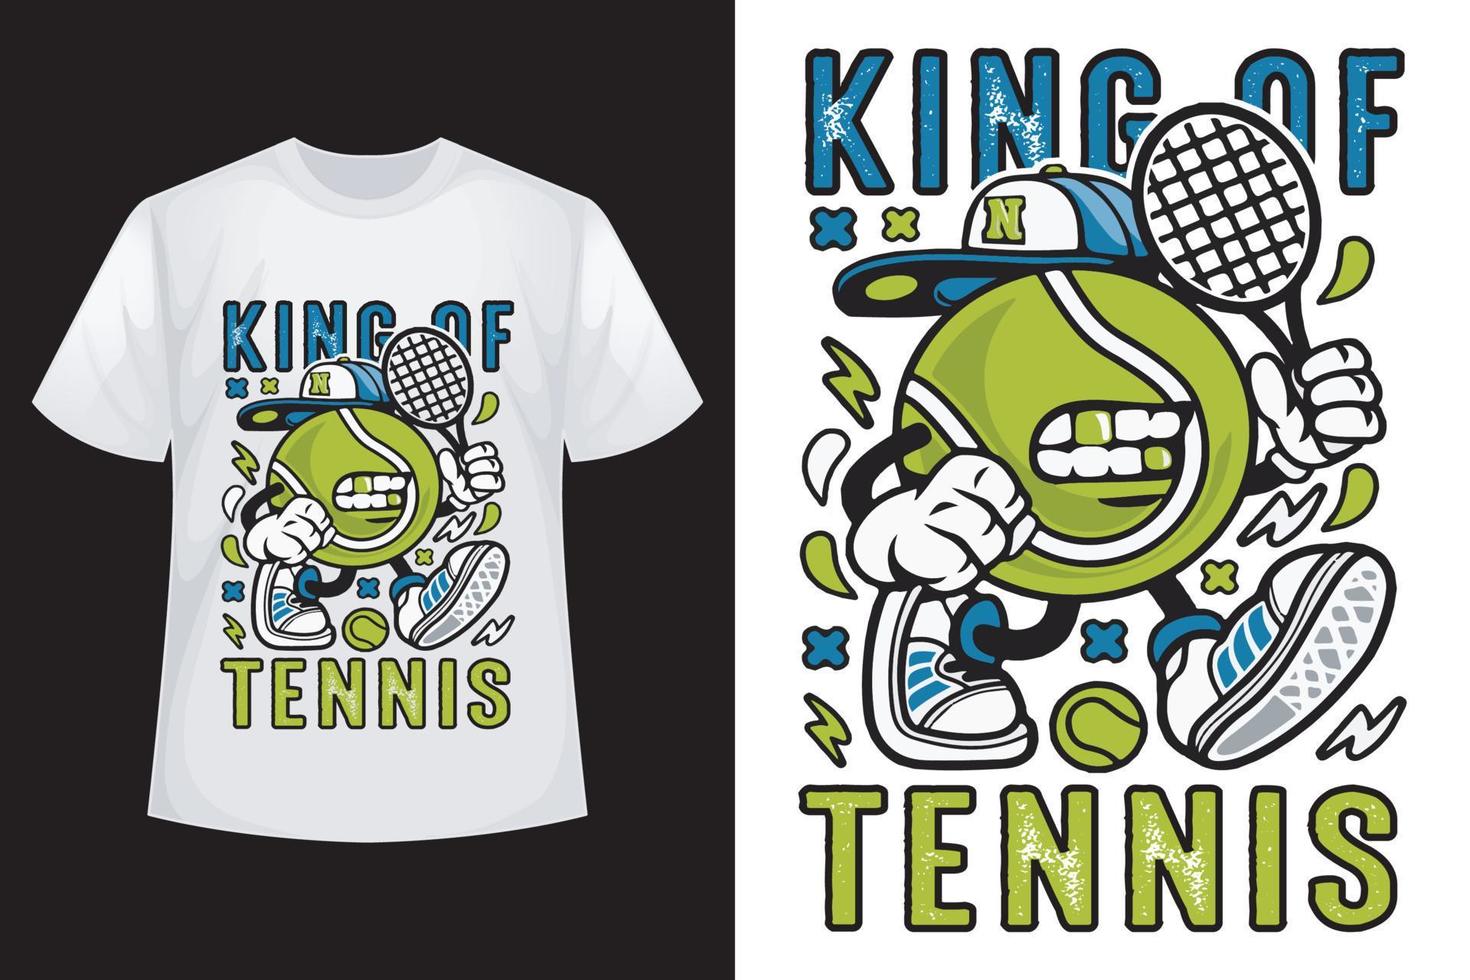 koning van tennis - tennis t-shirt ontwerp sjabloon vector